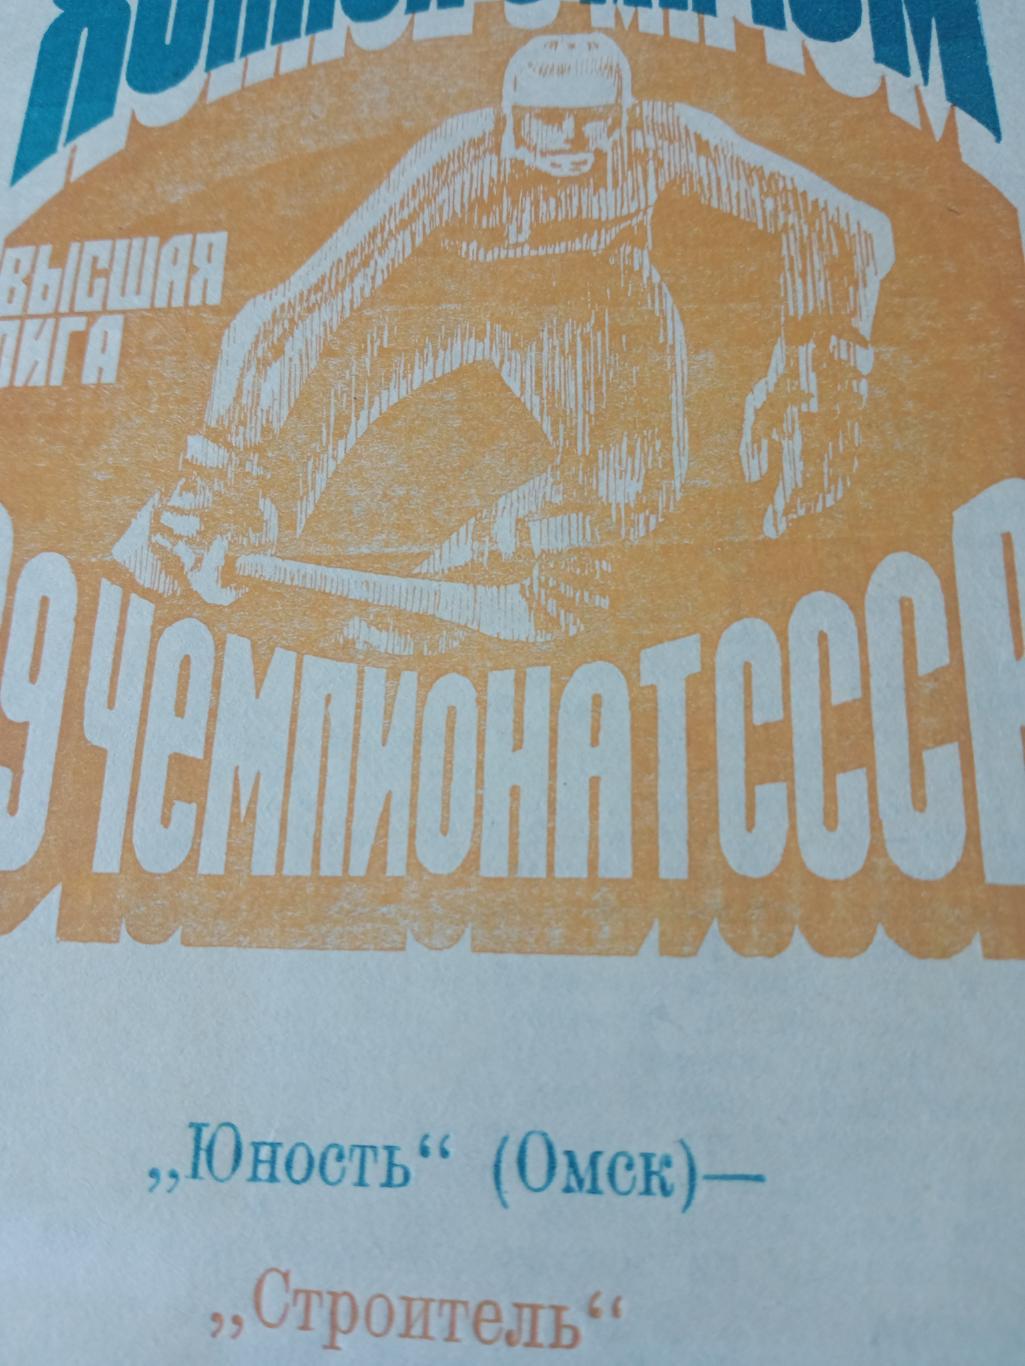 +Газетный отчет. Юность Омск - Строитель Сыктывкар. 24 ноября 1986 год